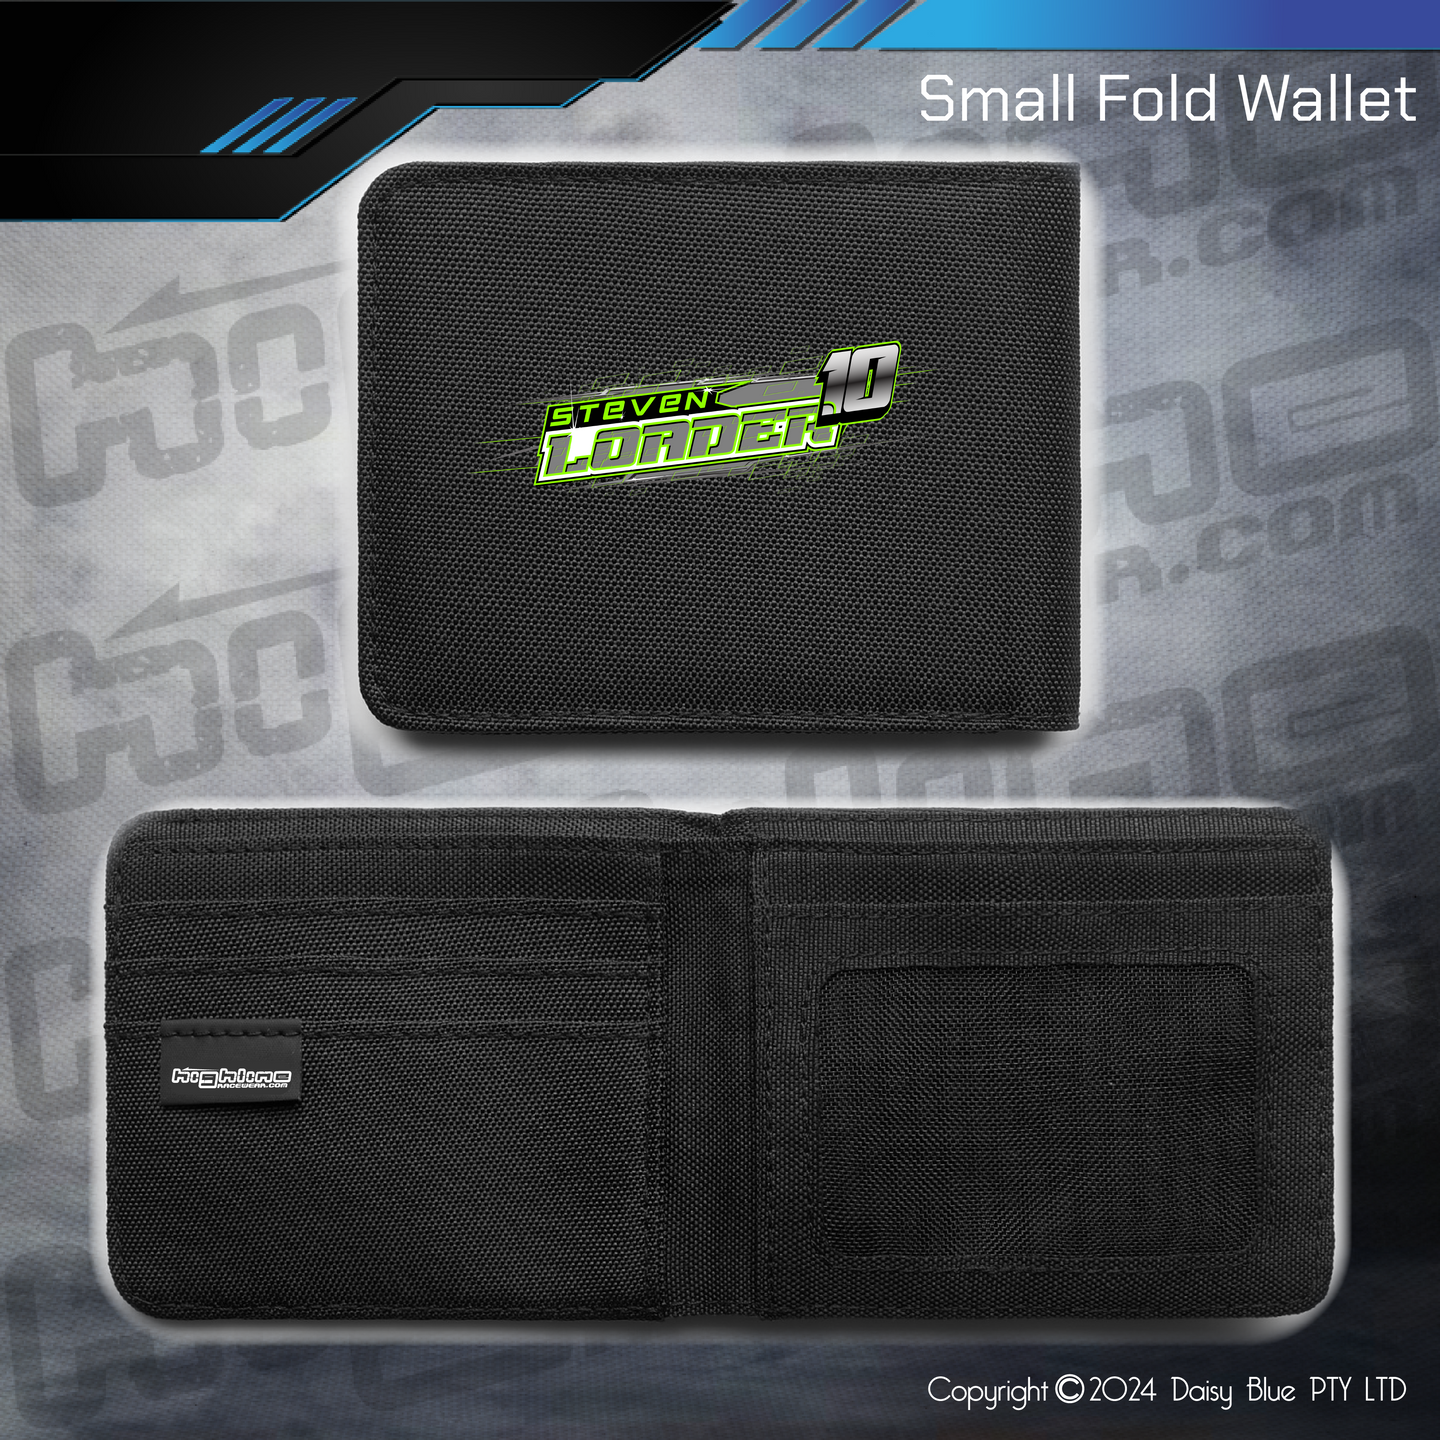 Compact Wallet - Steve Loader Sprint Car